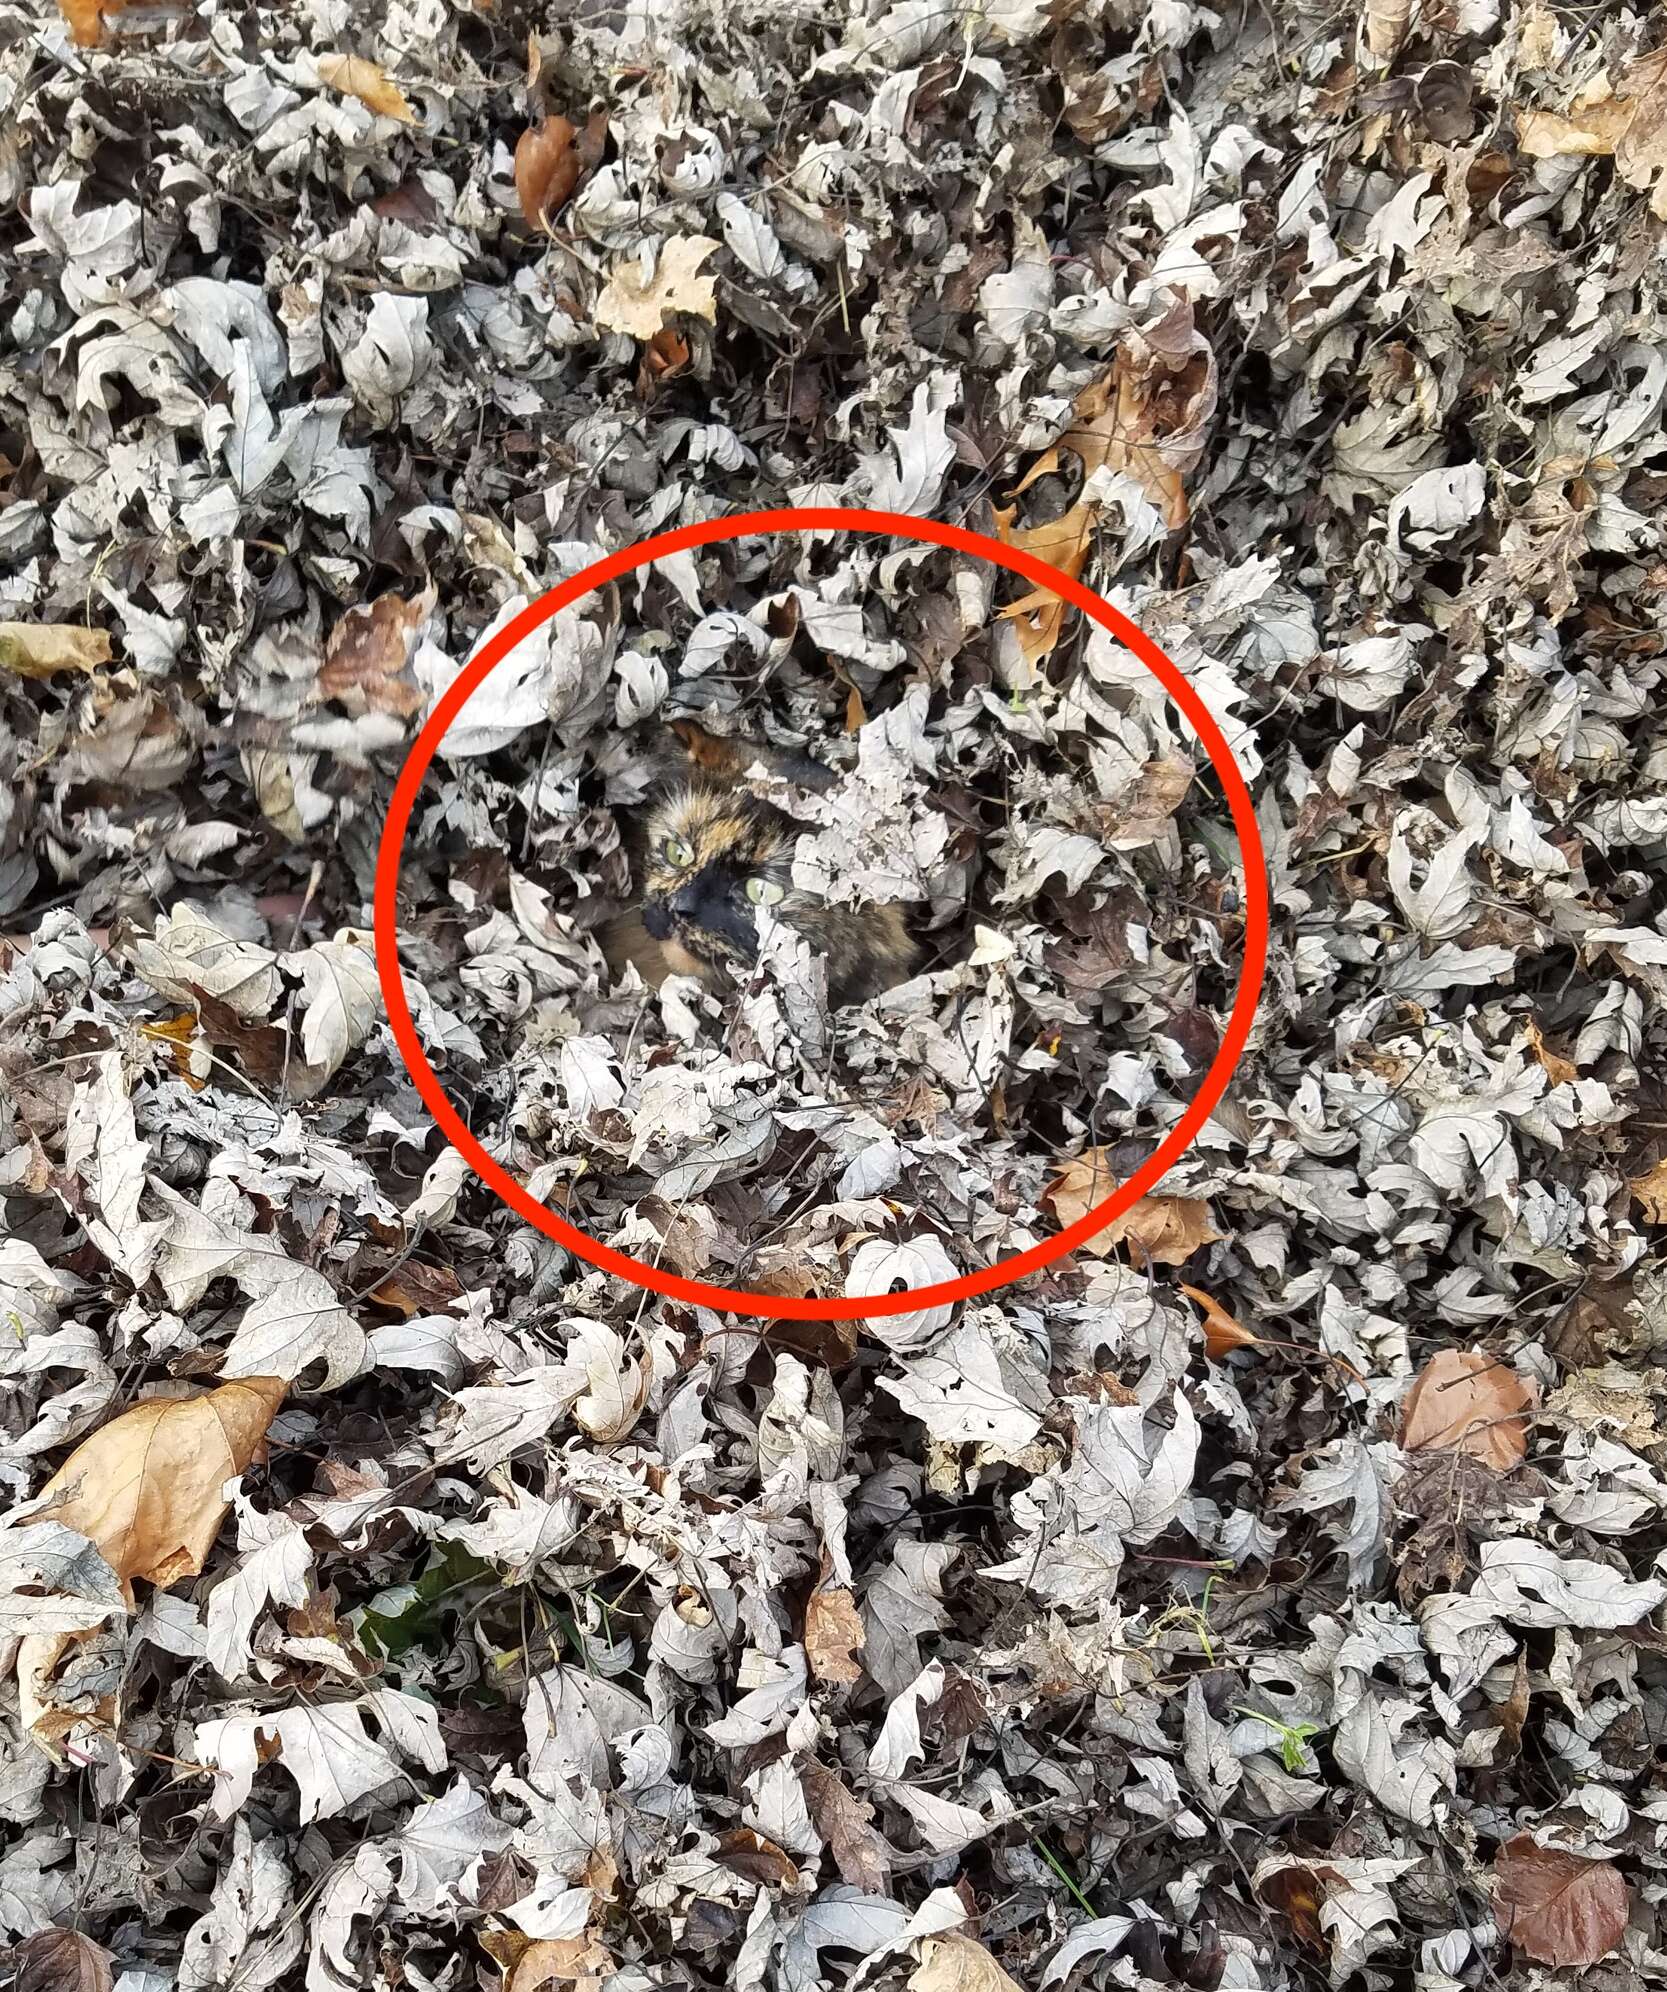 Tortoiseshell cat hidden in leaf pile